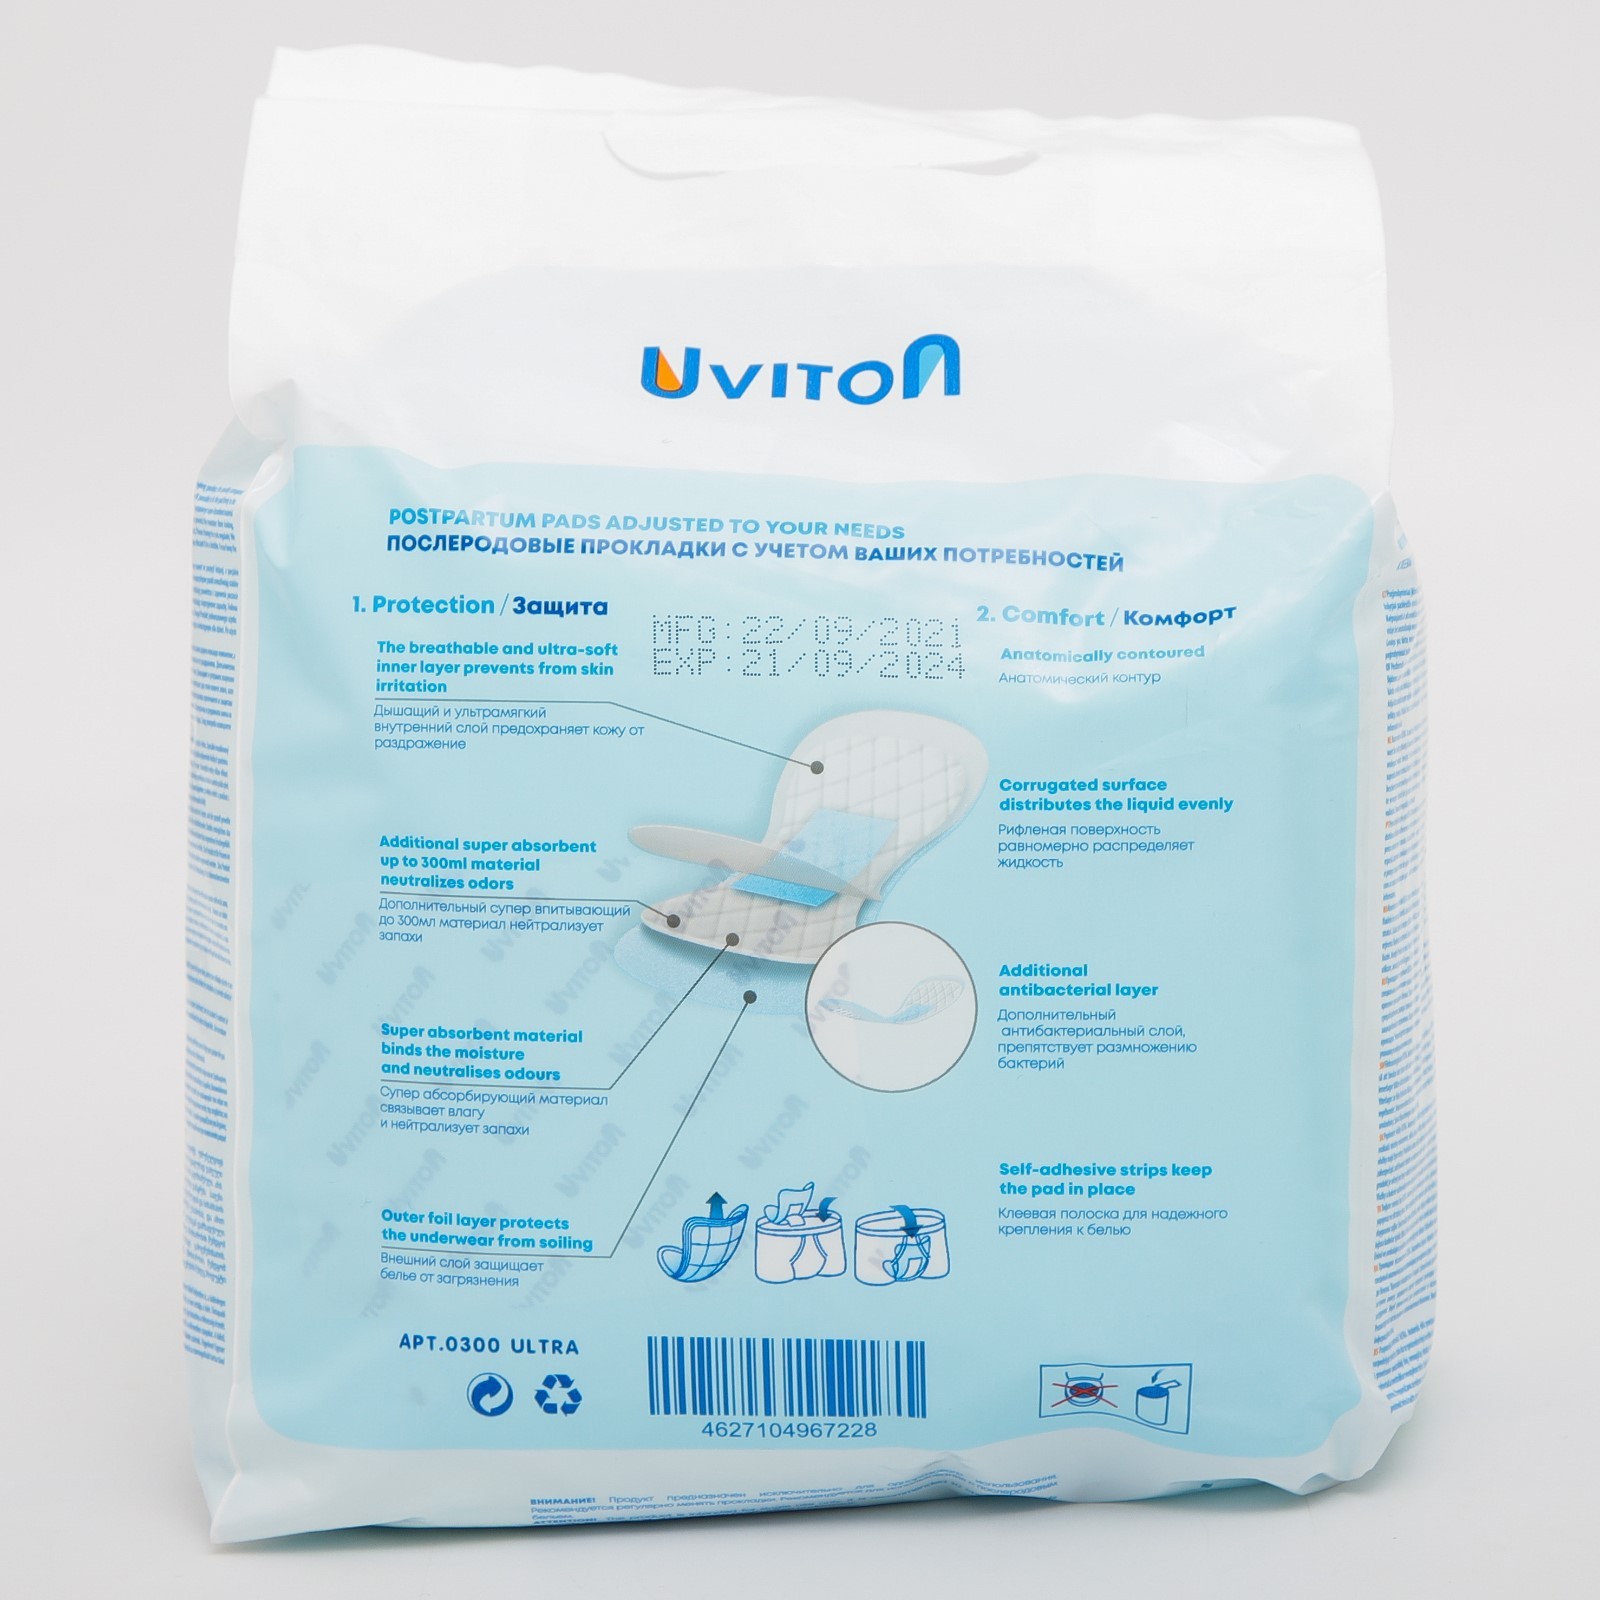 Прокладки Uviton послеродовые ультравпитывающие Ultra арт.0300 - фото 9